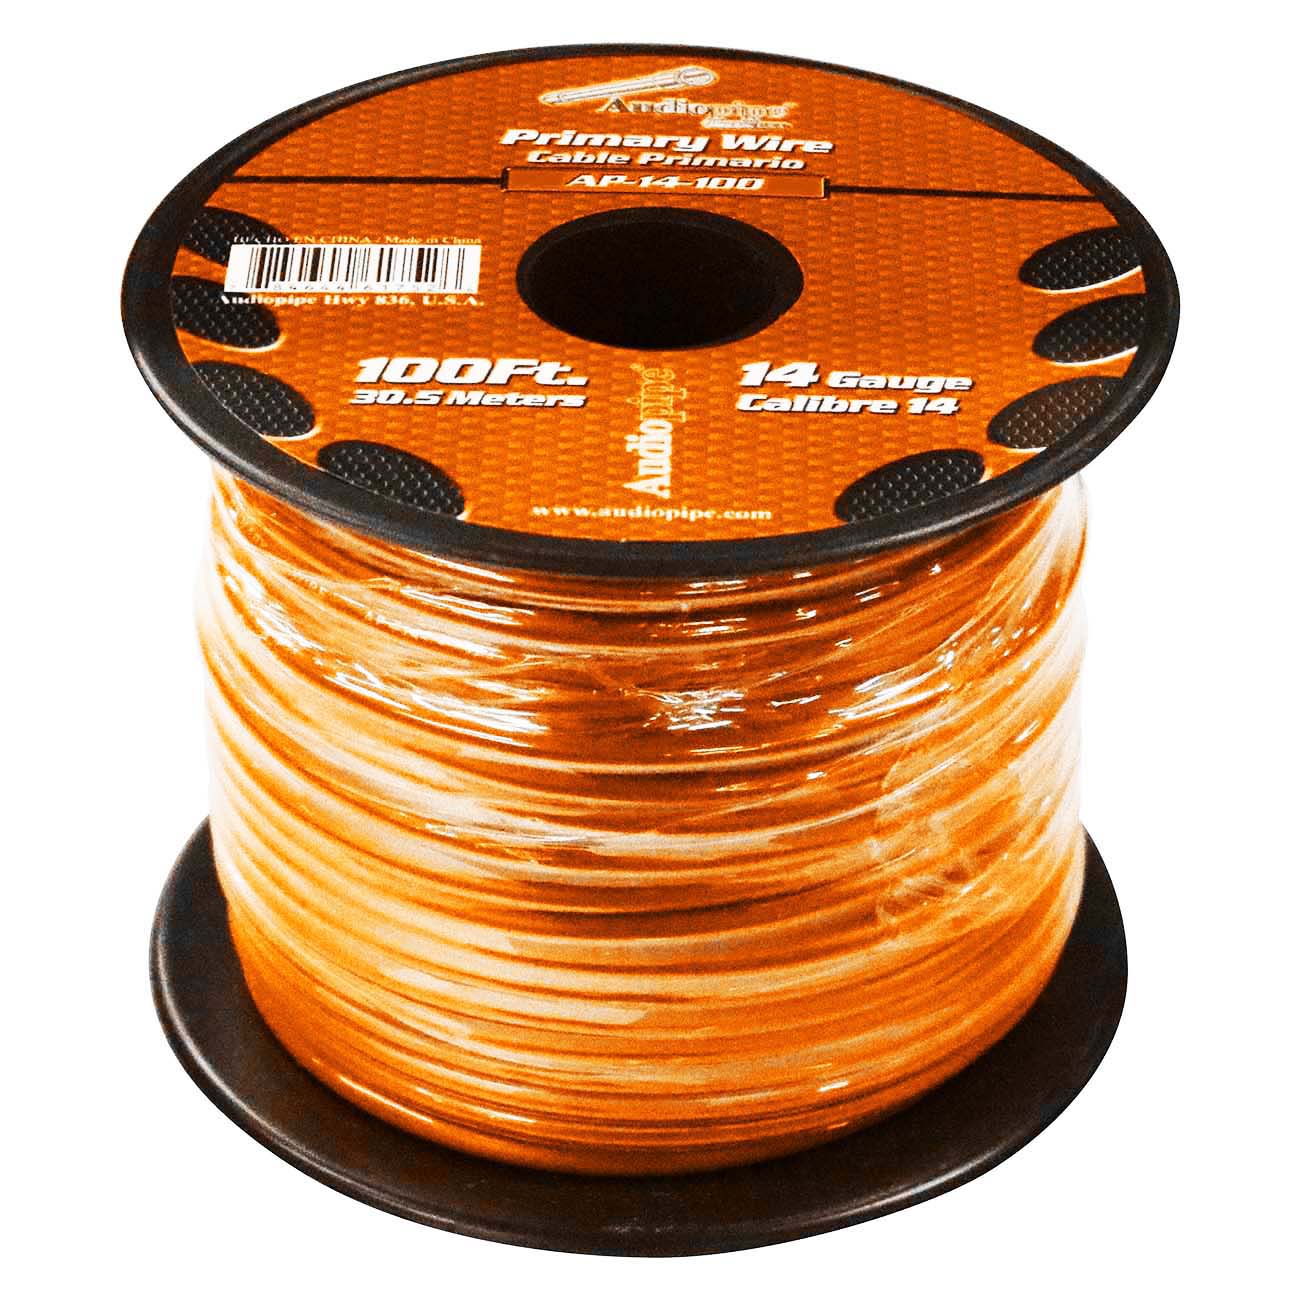 Audiopipe 14 Gauge 100ft Orange Primary Wire